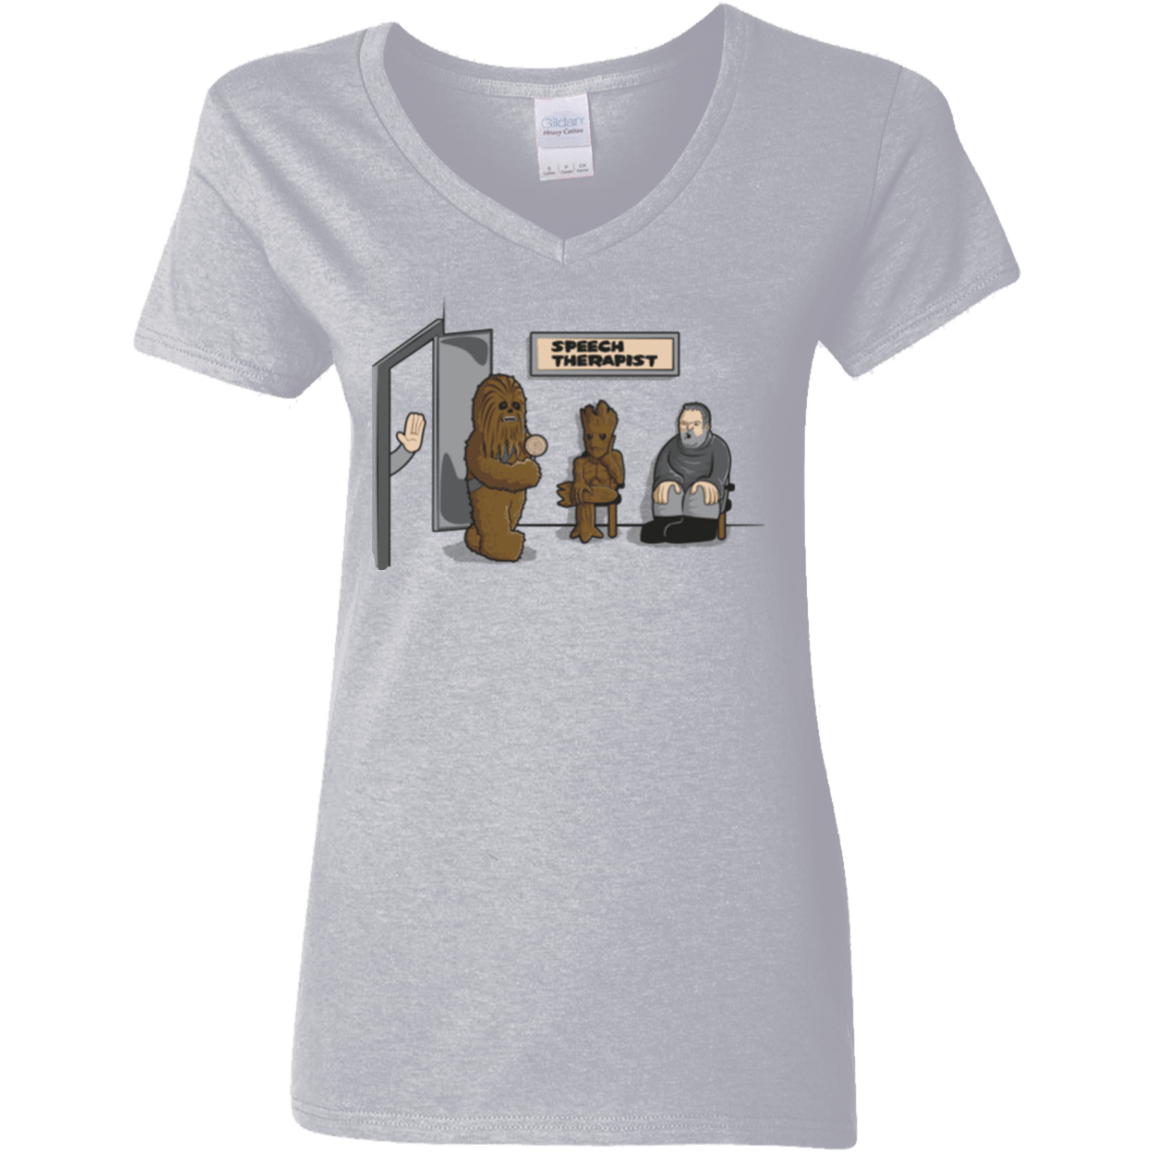 T-Shirts Sport Grey / S Speech Therapist Women's V-Neck T-Shirt